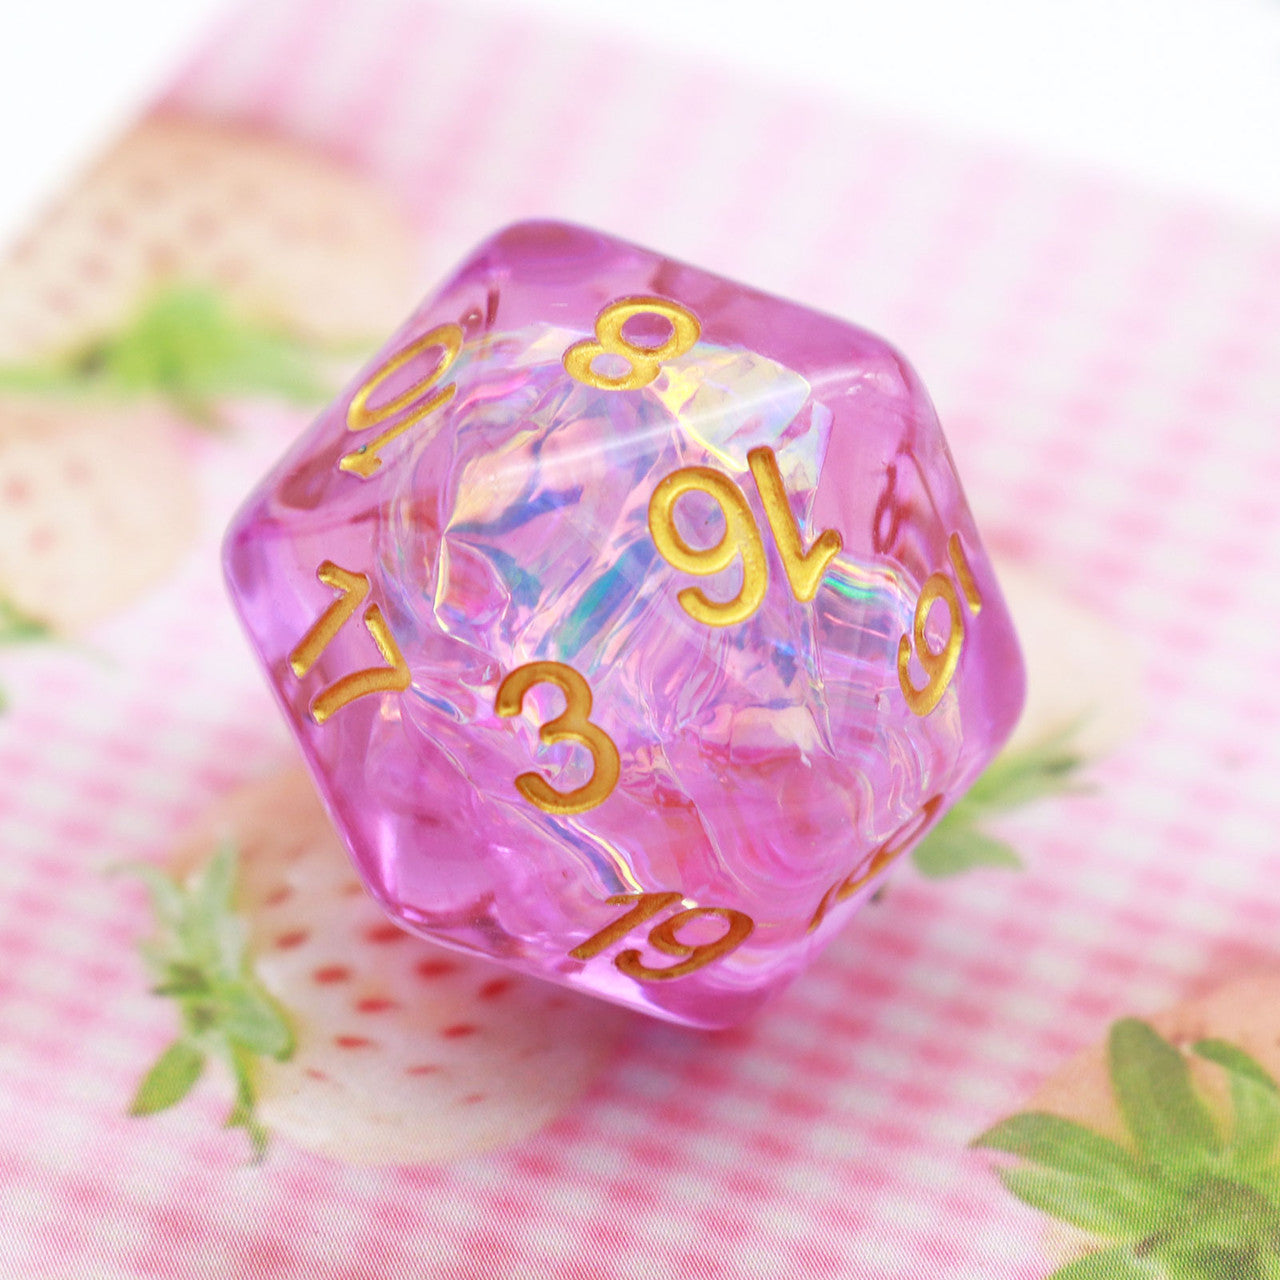 Iridescent dice, resin dice,purple dice